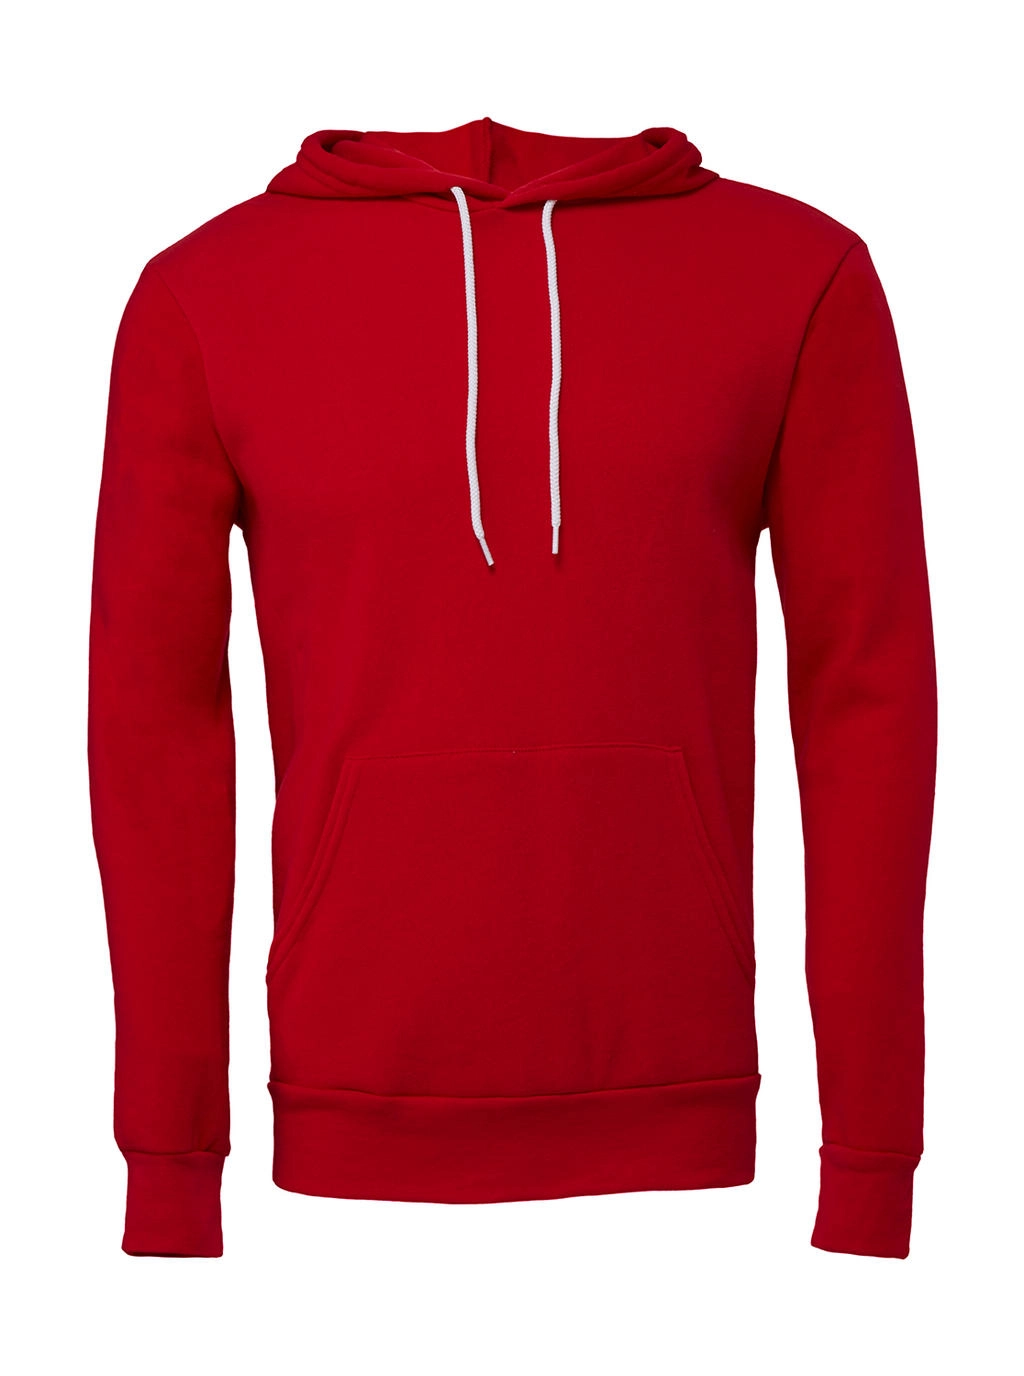 Unisex Poly-Cotton Pullover Hoodie zum Besticken und Bedrucken in der Farbe Red mit Ihren Logo, Schriftzug oder Motiv.